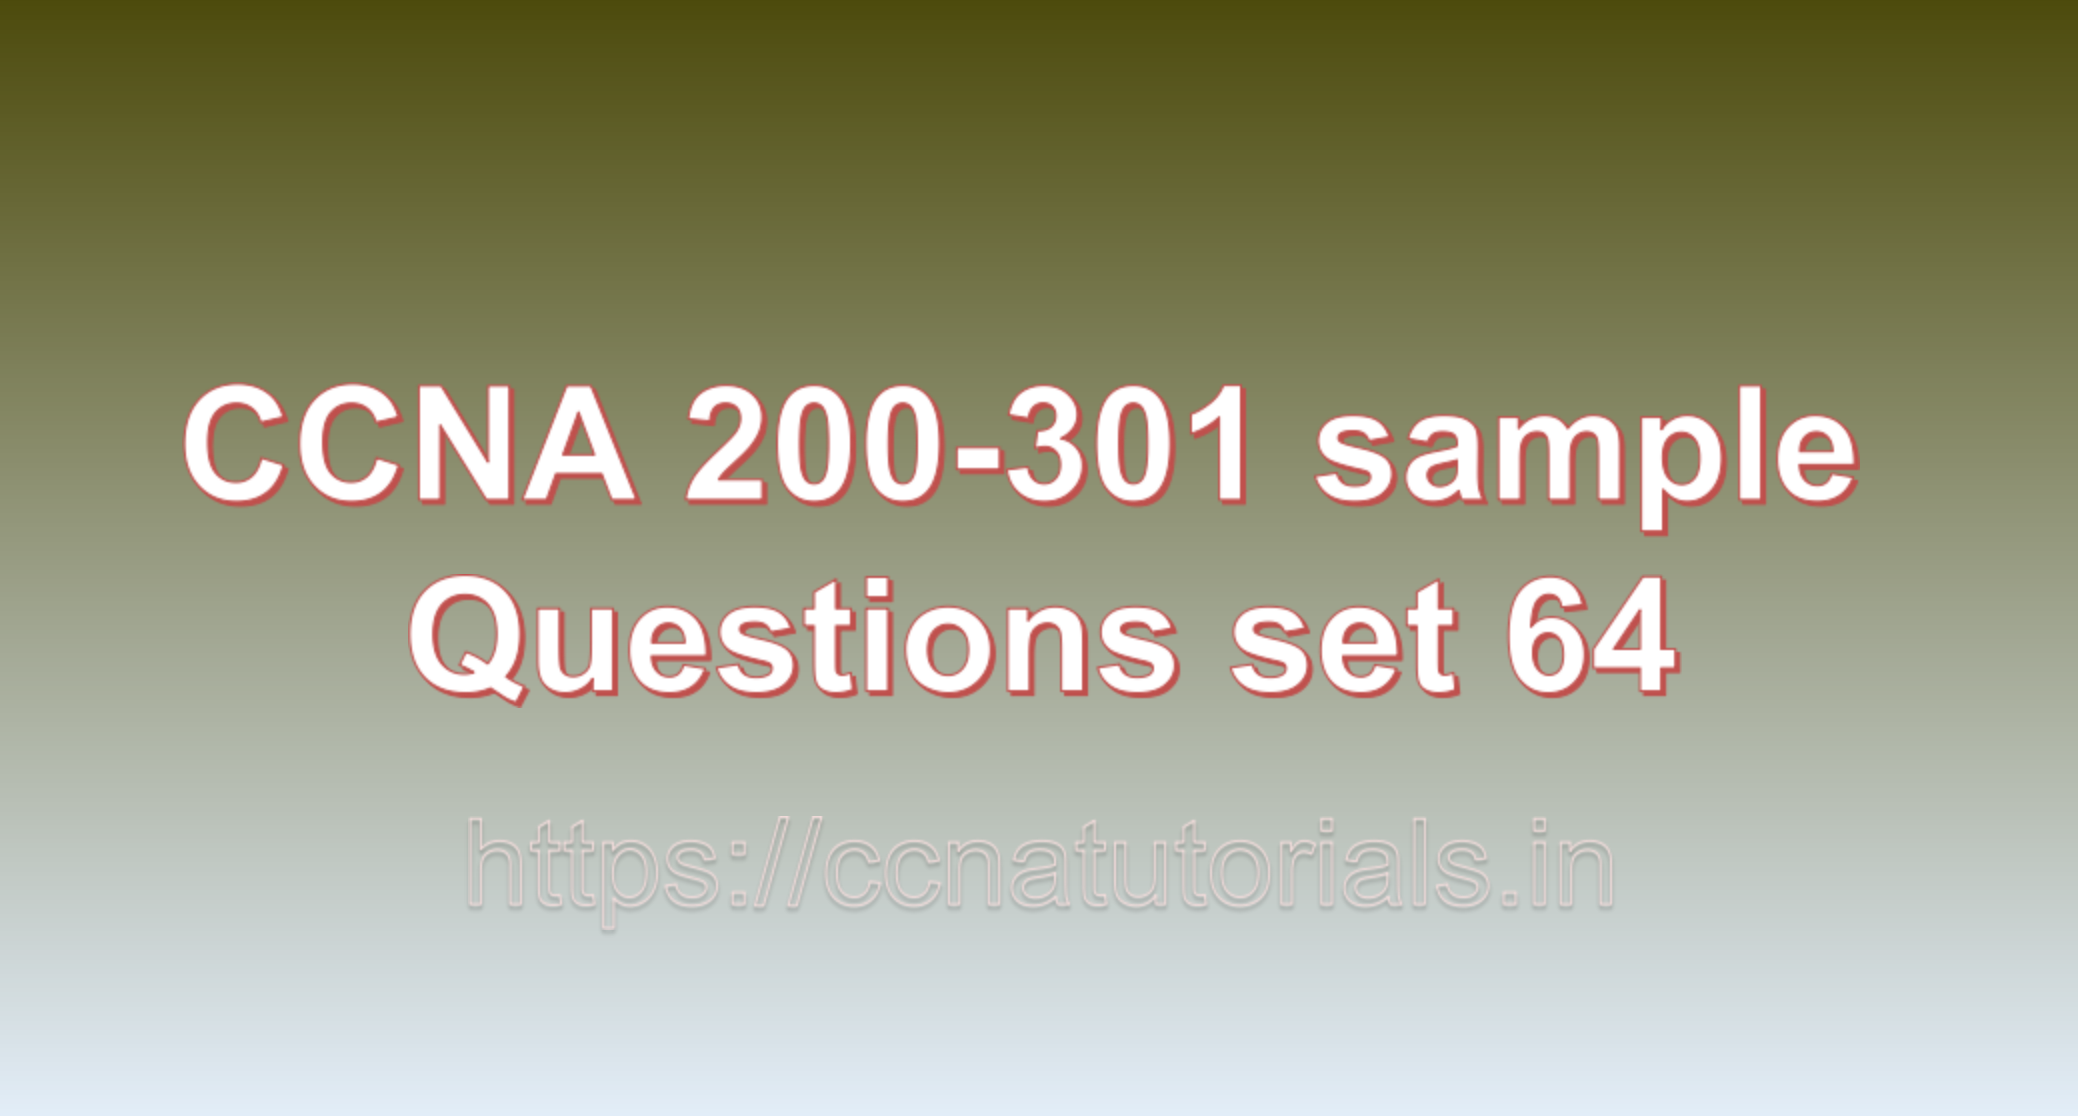 ccna sample questions set 64, ccna tutorials, CCNA Exam, ccna